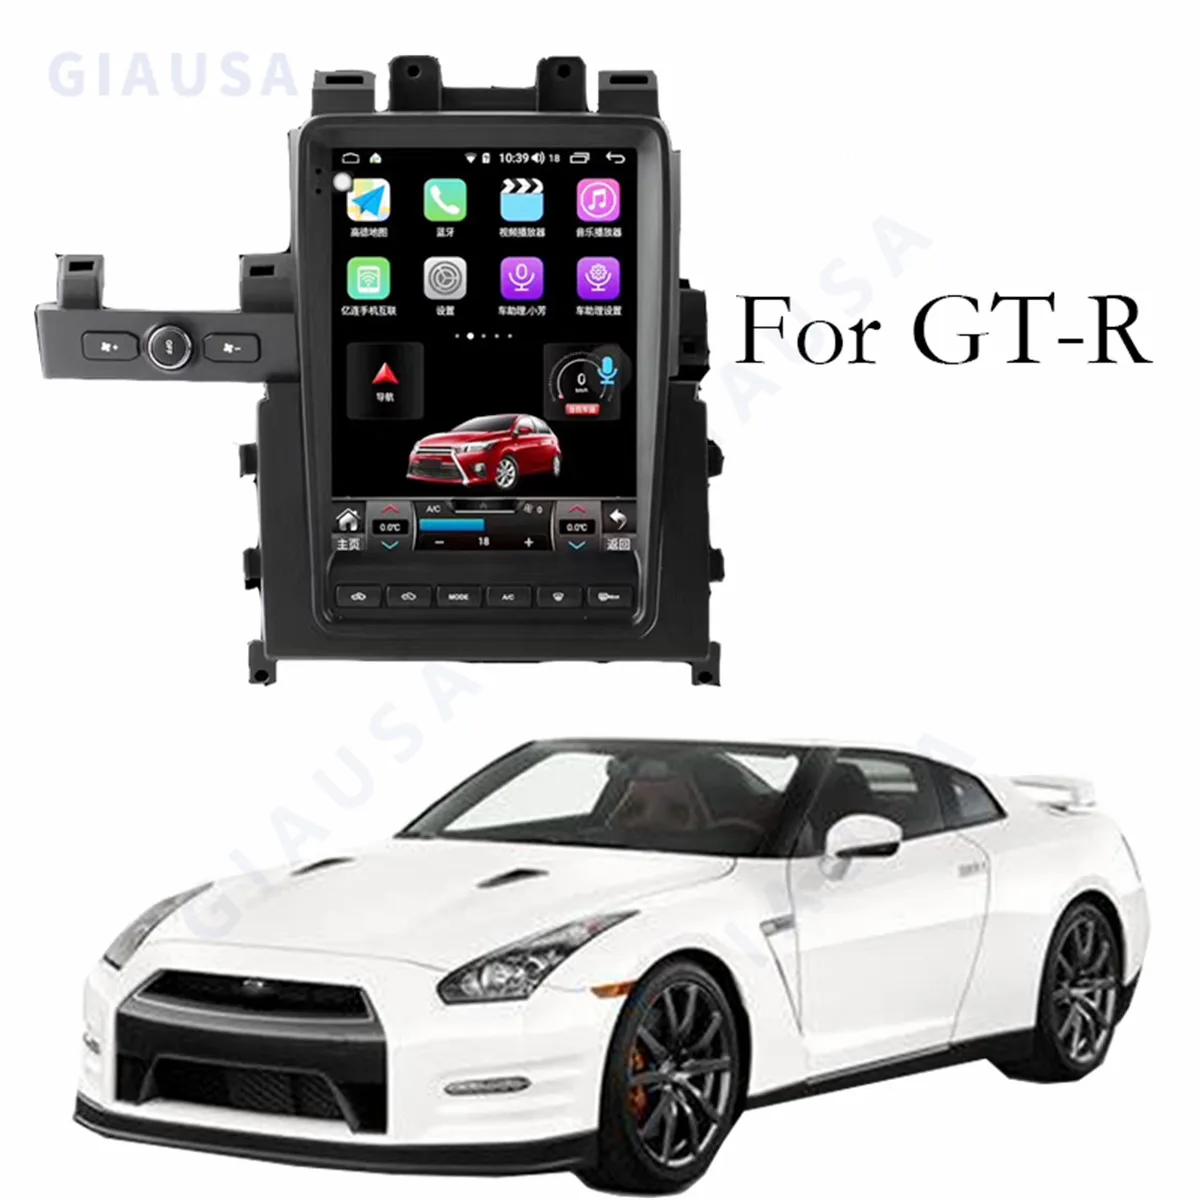 12.1 אינץ ' 8+128G ברכב נגן מולטימדיה GPS שמע רדיו ניסאן GT-R GTR R35 2007-2016 Android12 שדרוג תצוגת HD נאבי . ' - ' . 0